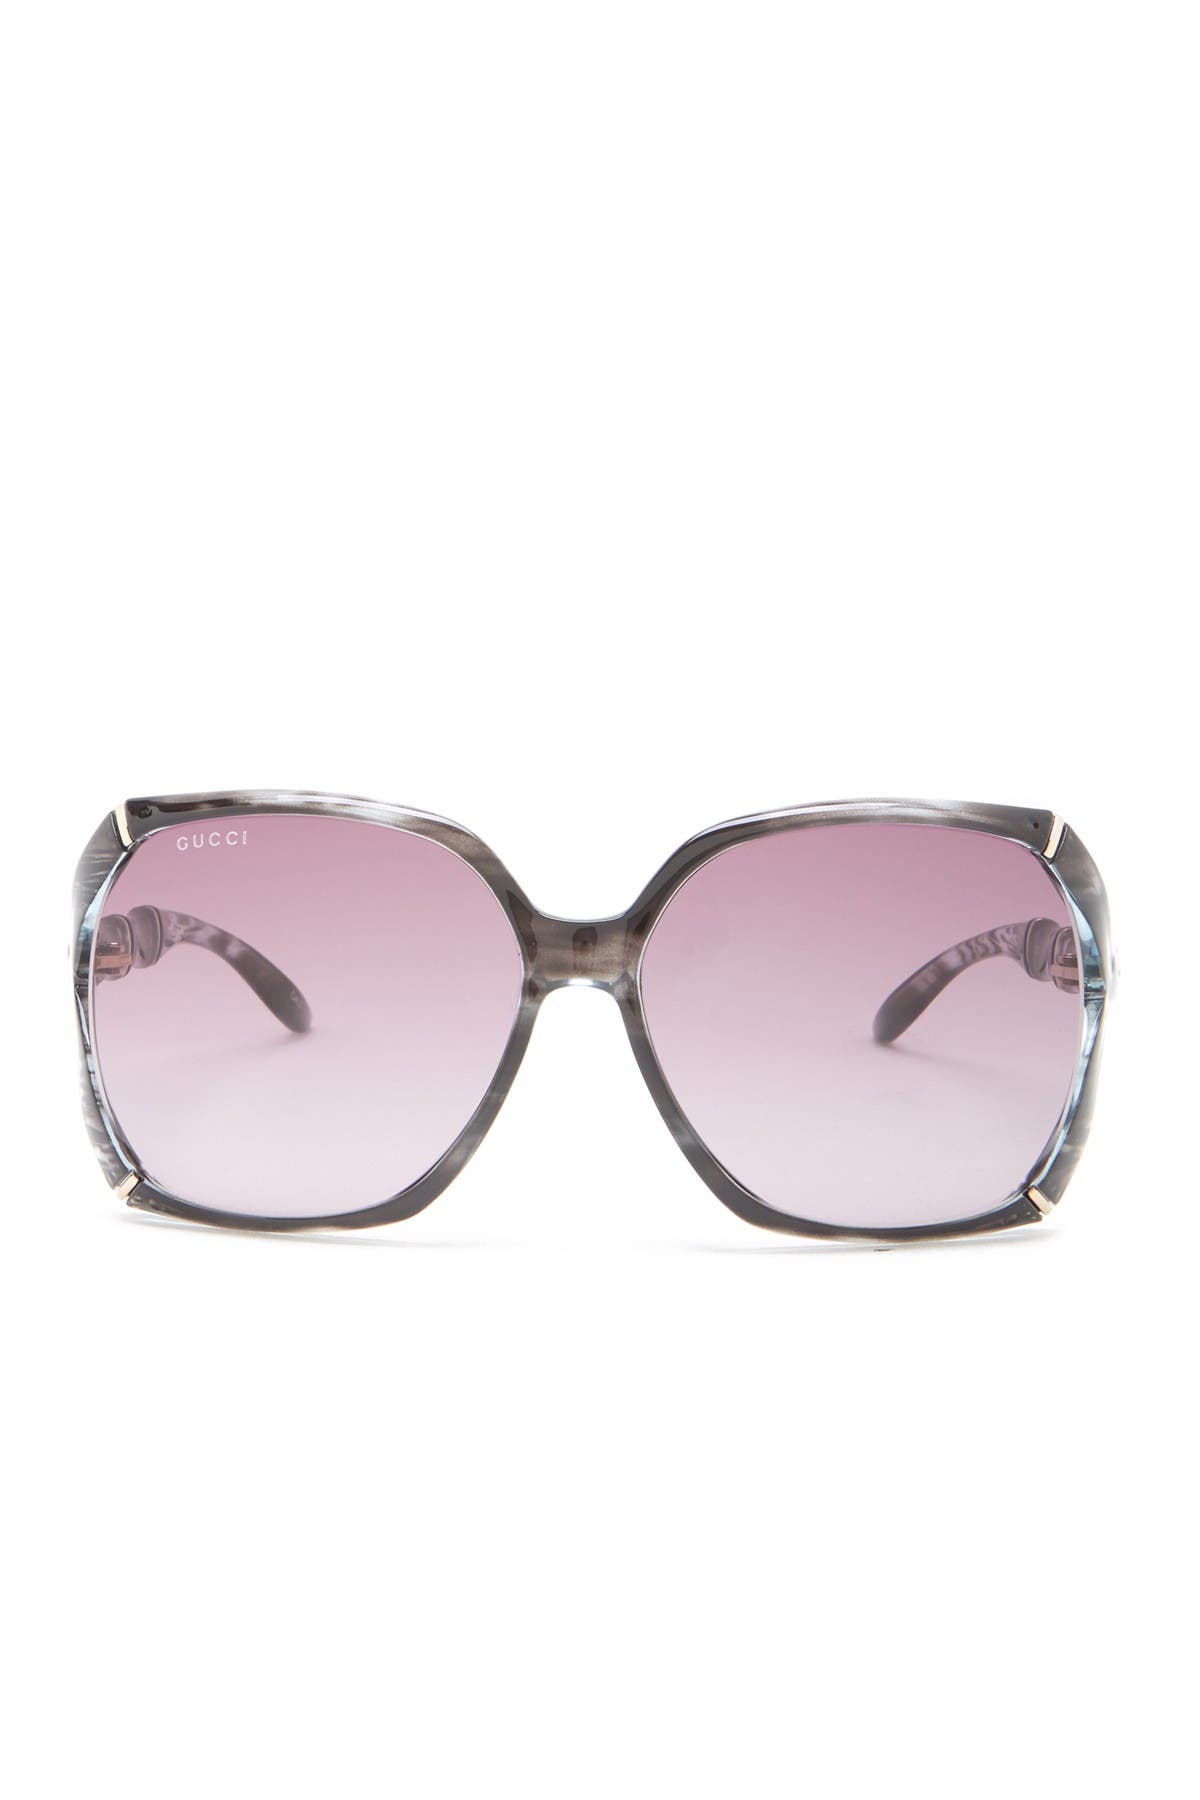 gucci 58mm oversized square sunglasses